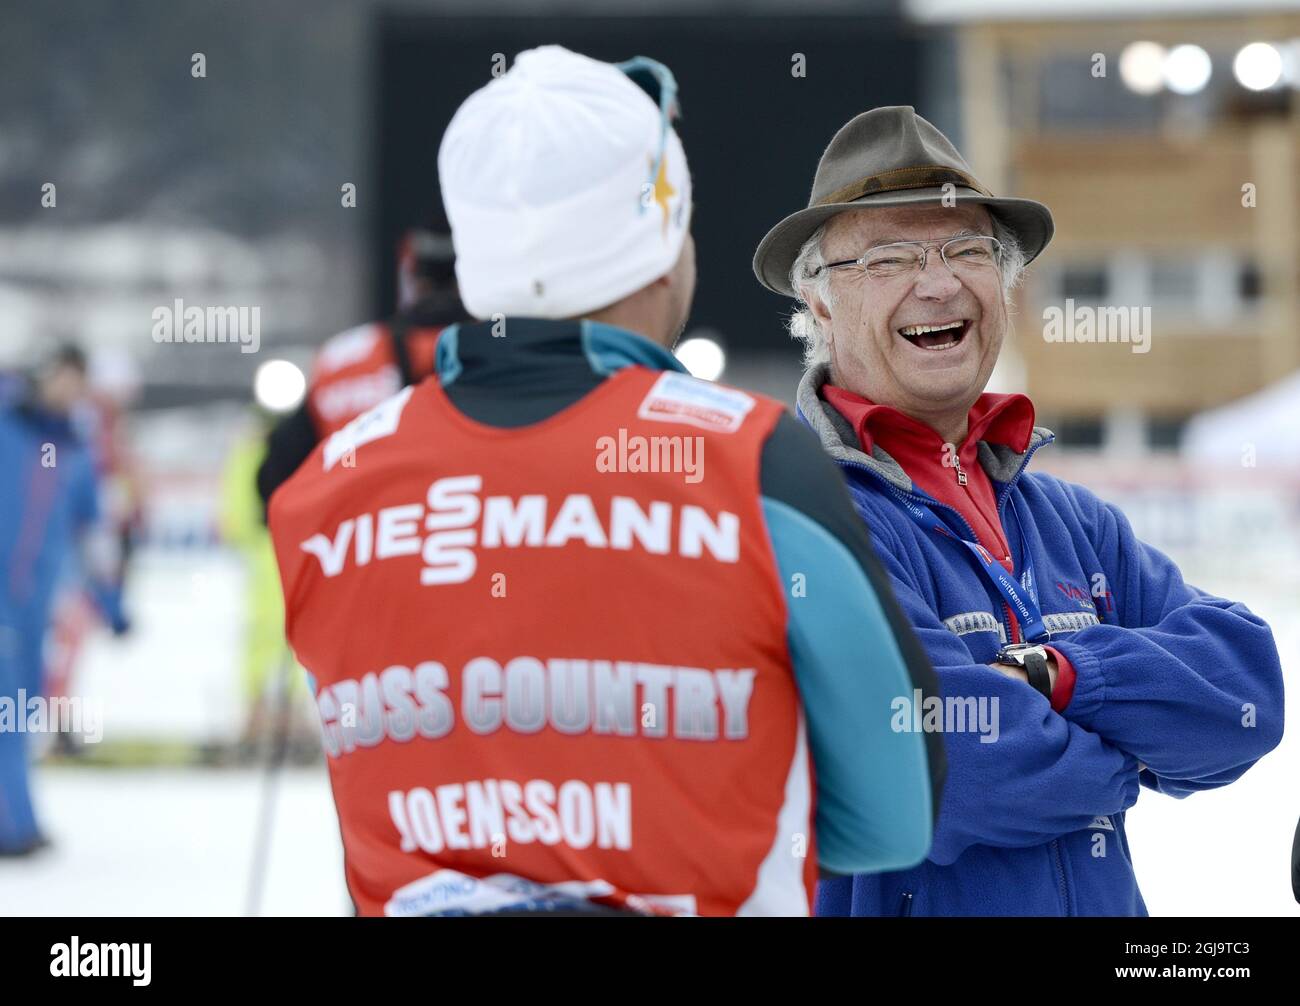 VAL DI FIEMME 20130227 Kung Carl Gustaf skrattar tillsammans med Emil  Jonsson vid sitt besok pa skidstadion under skid VM i Val di Fiemme,  Italien. Foto: Pontus Lundahl / SCANPIX / kod